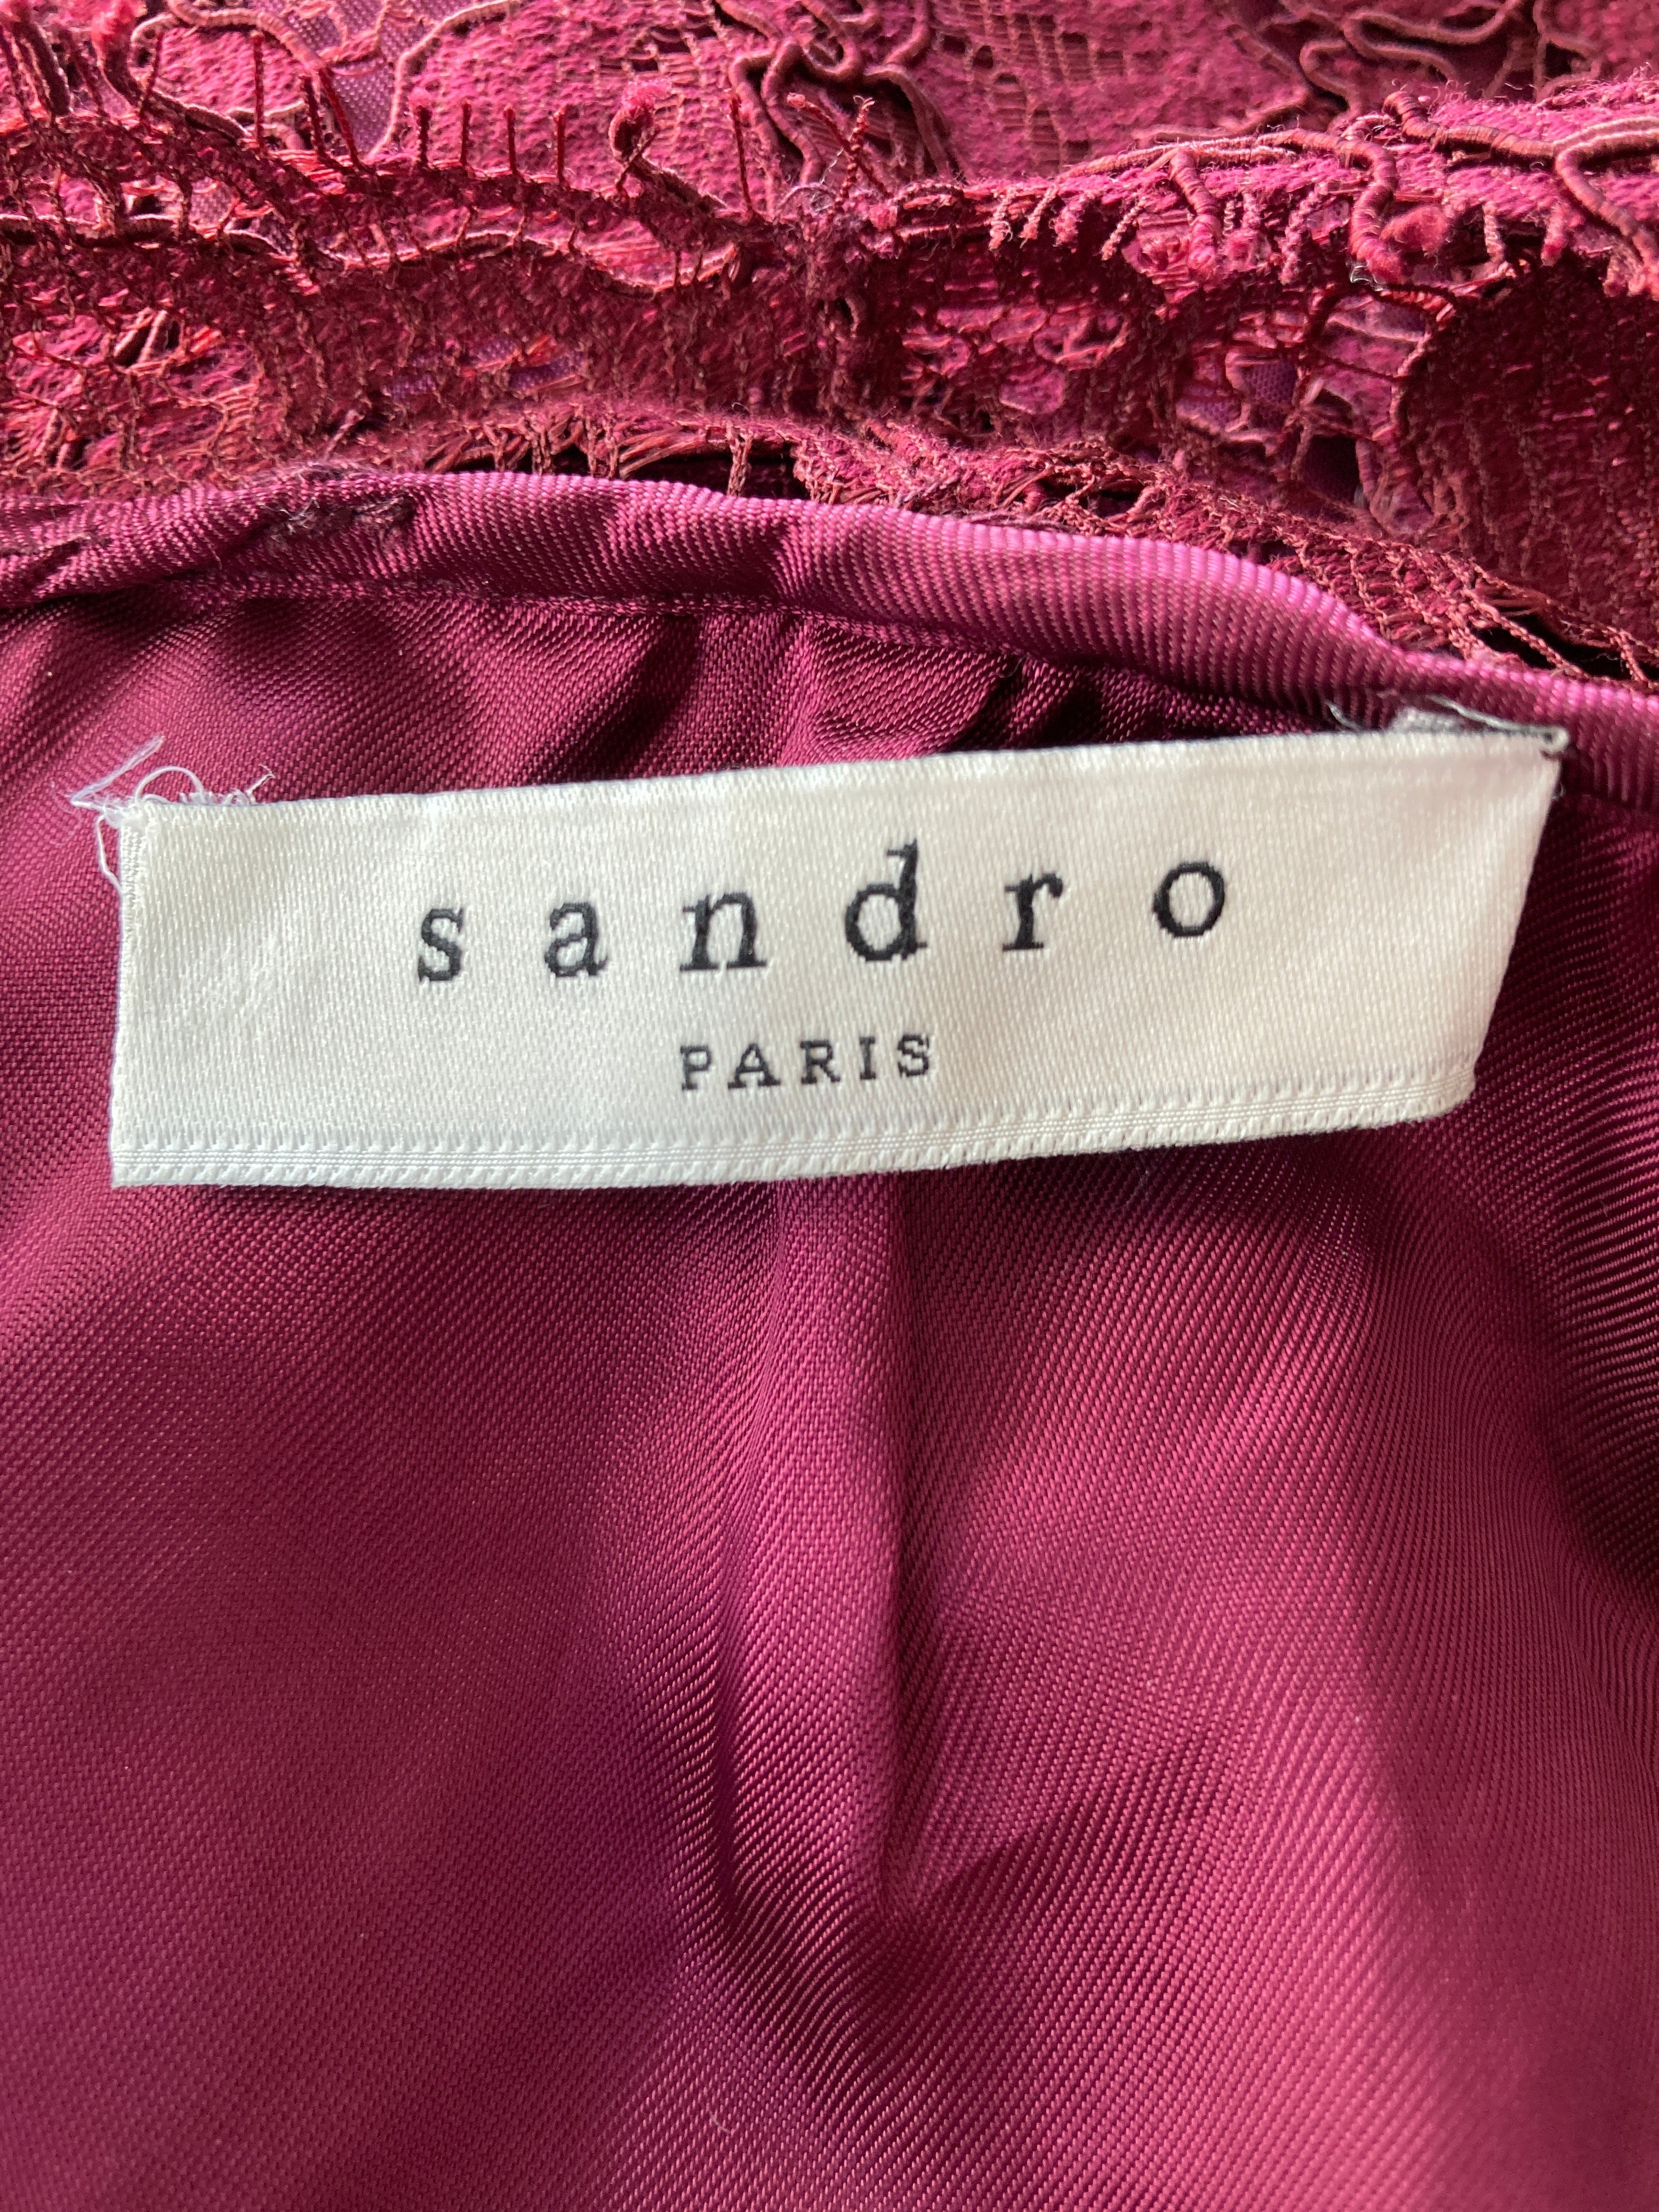 Sandro "Romie" Bordeaux Lace Cocktail Dress, S